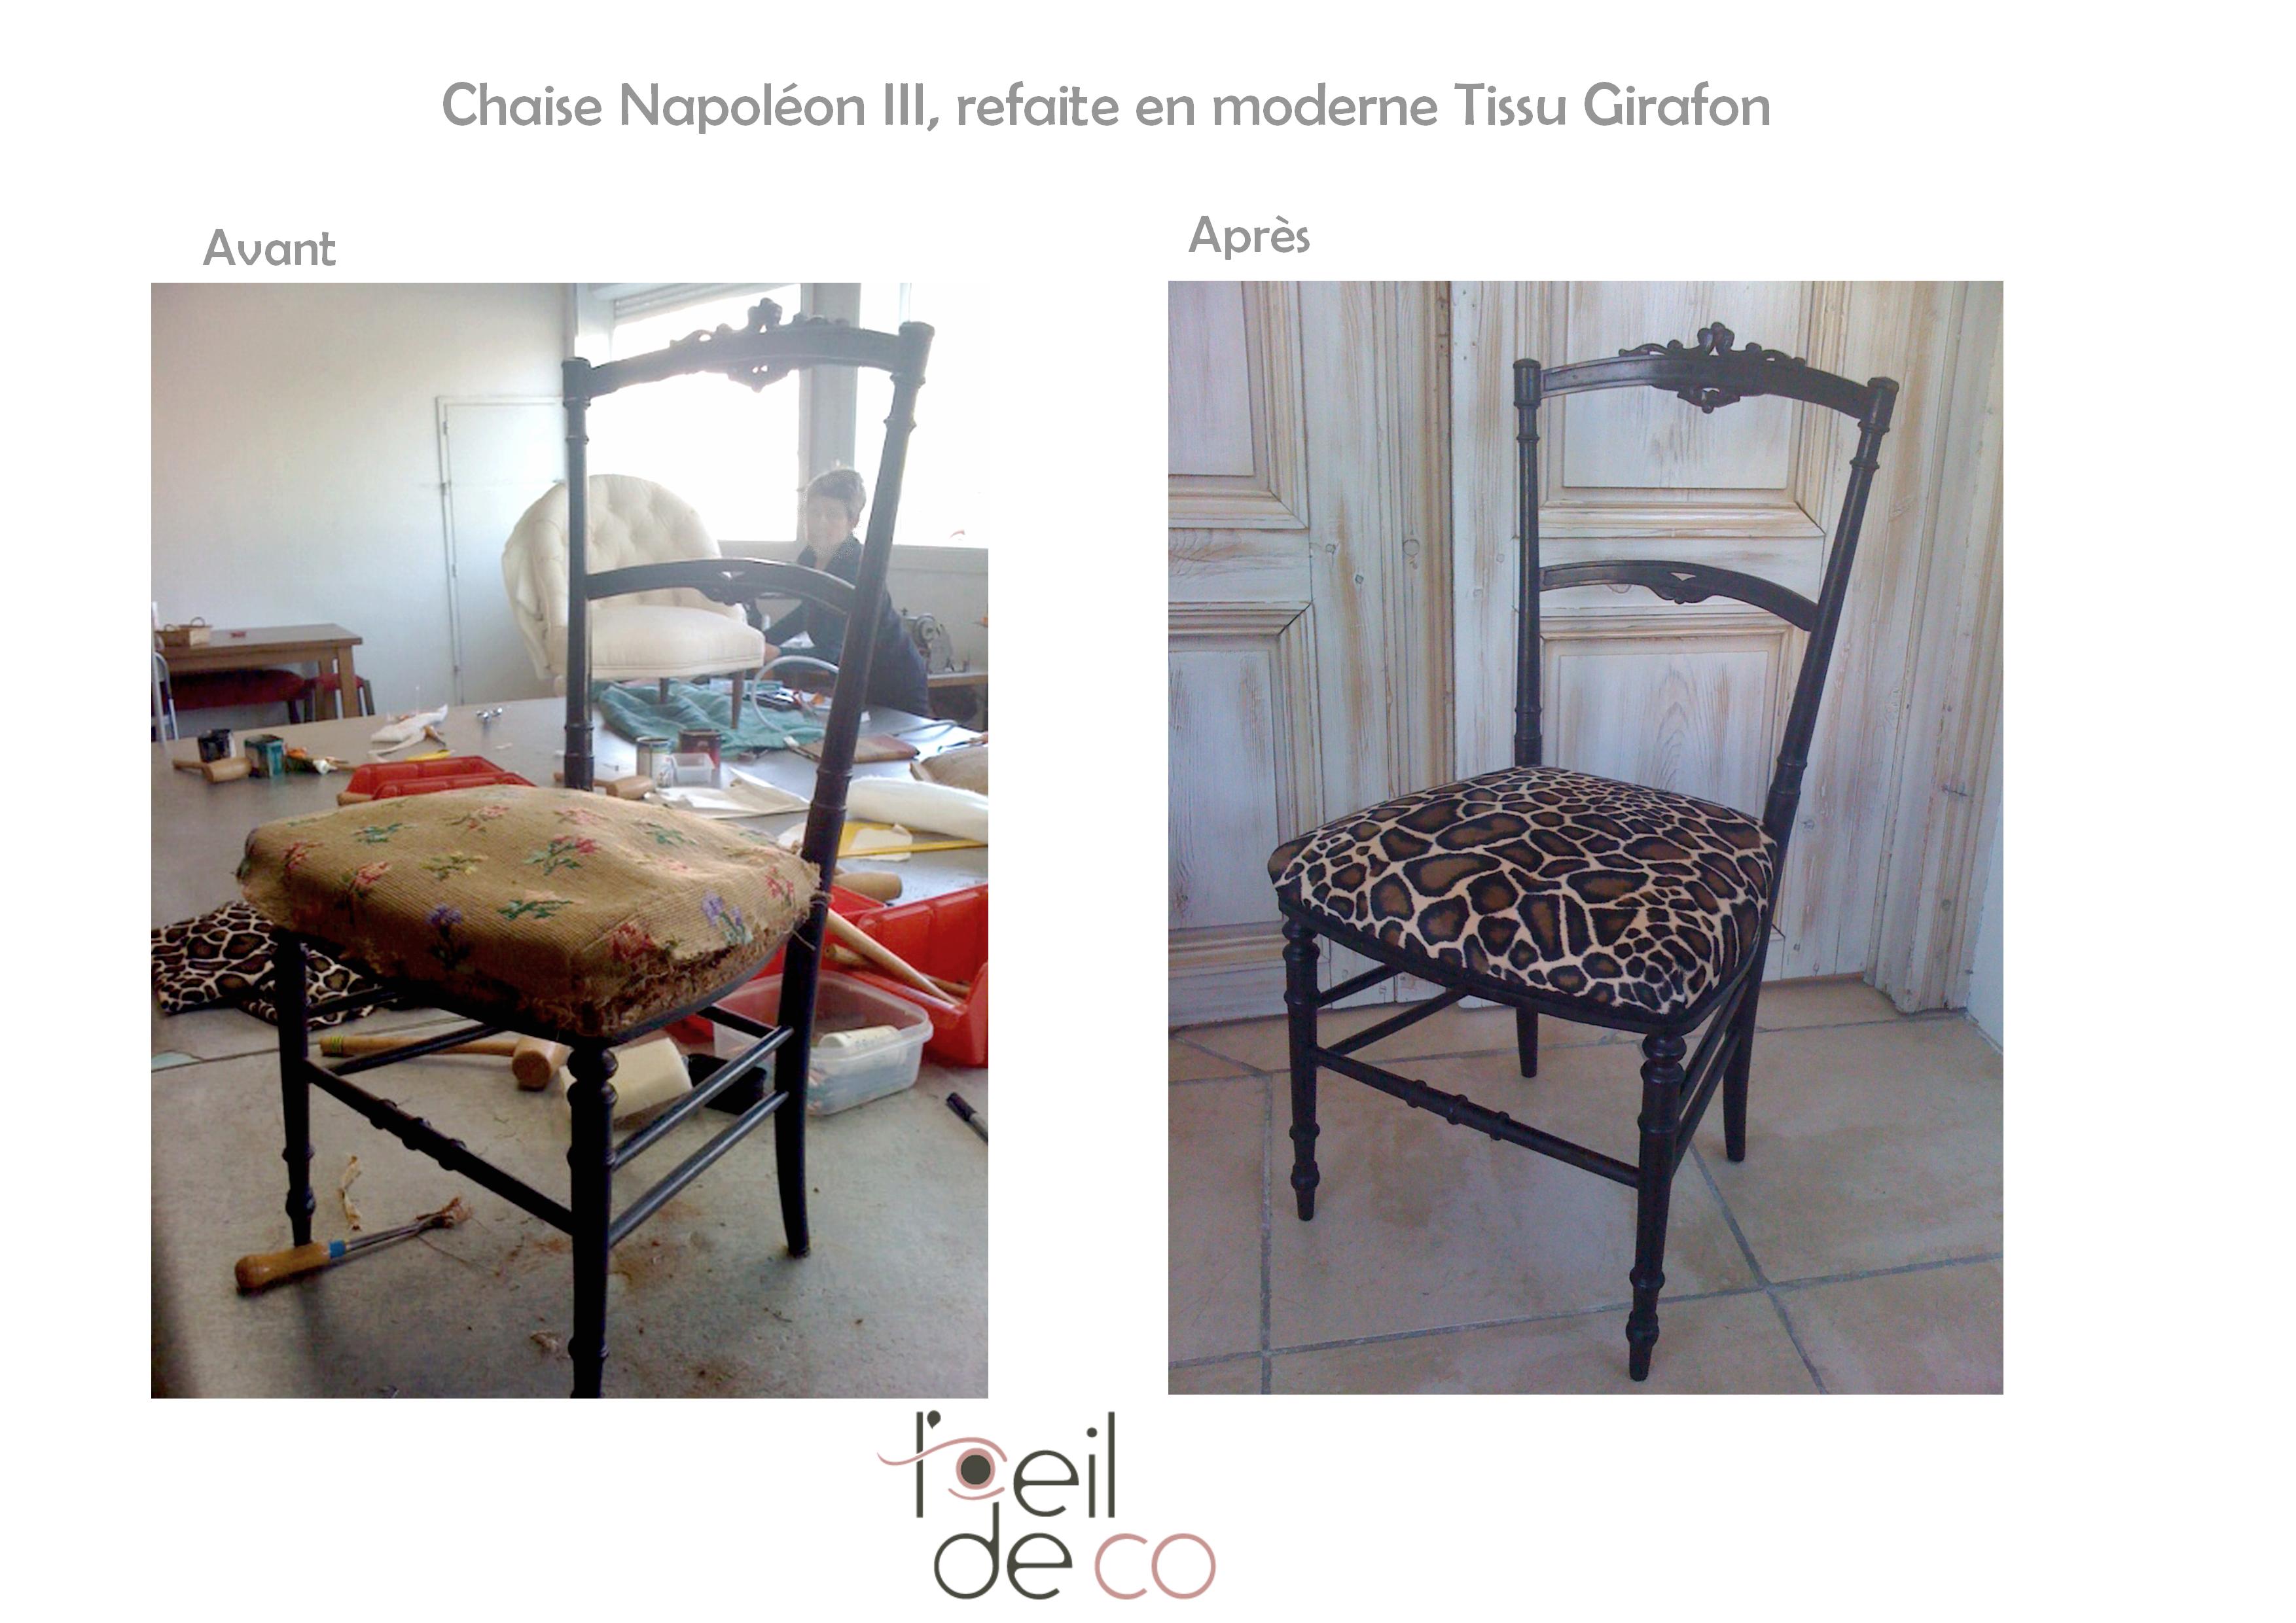 chaise_napoleonIII_tissu_girafon